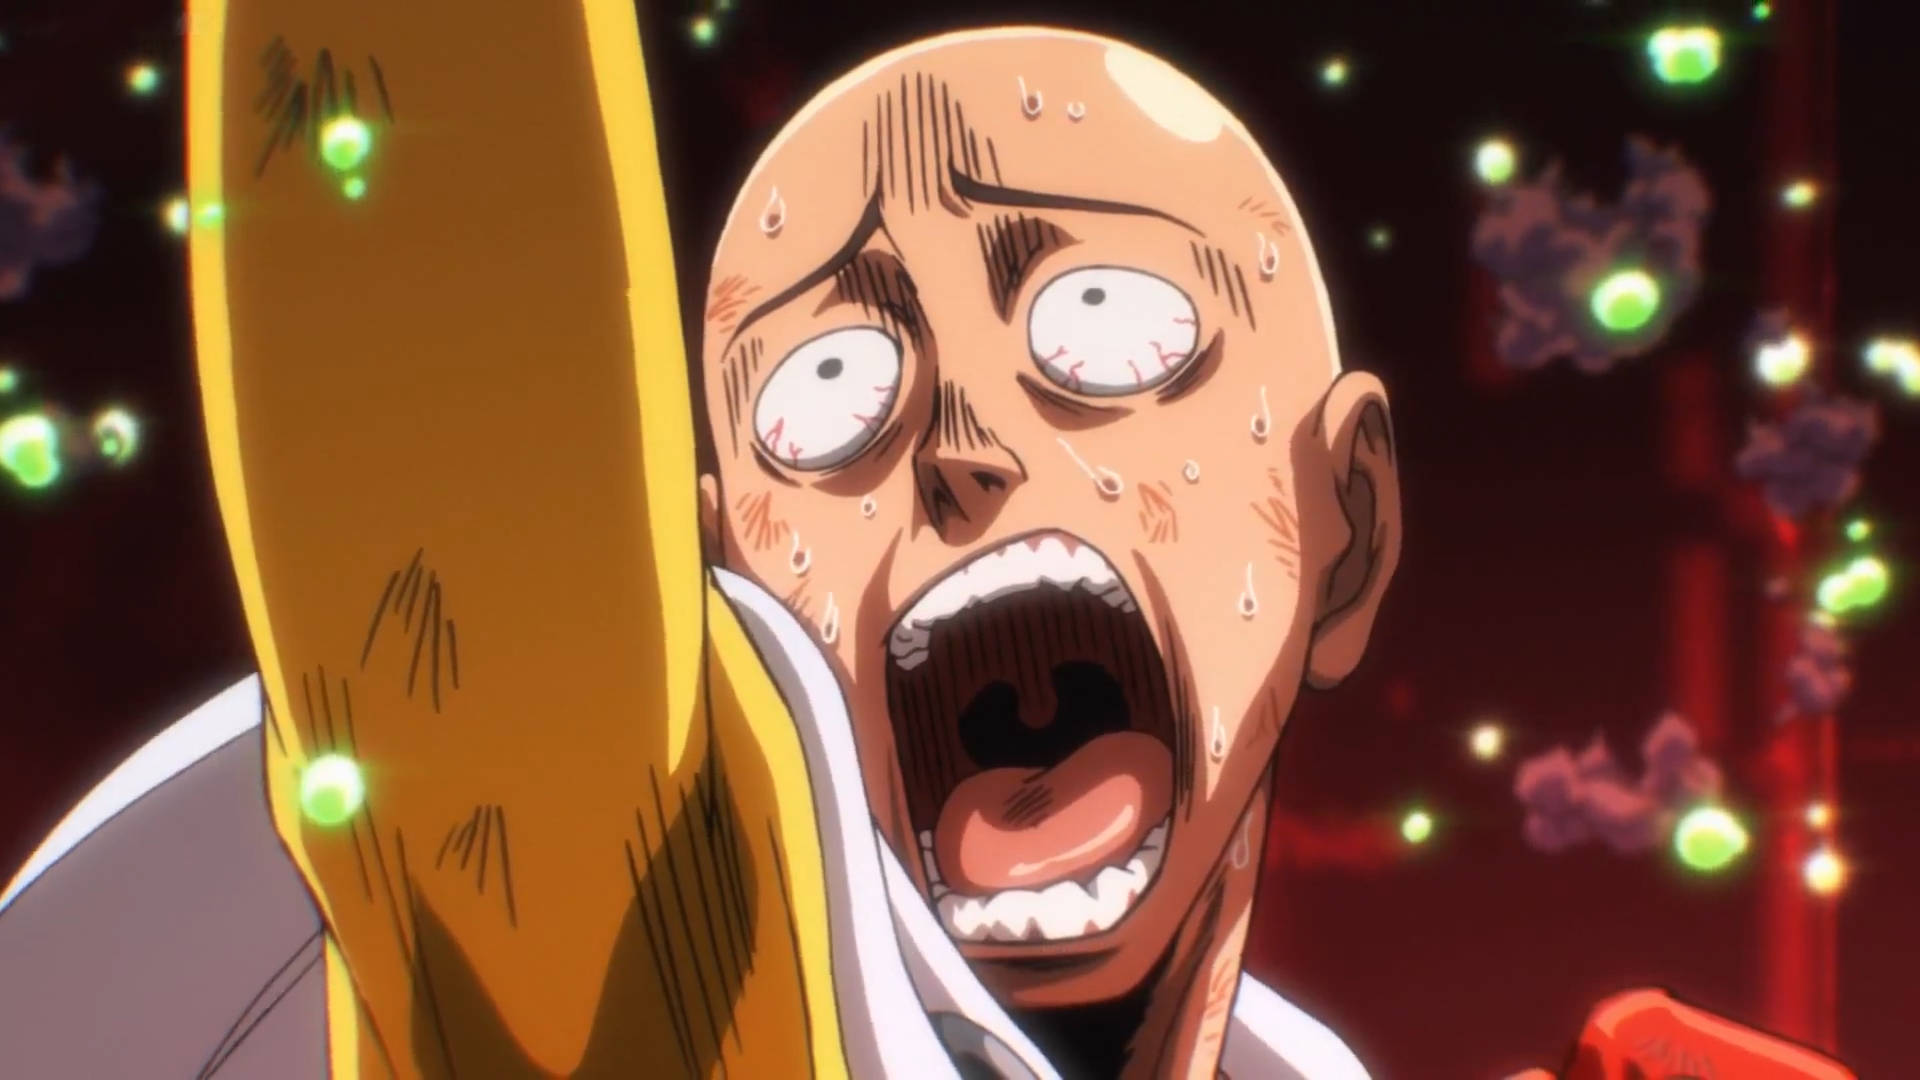 Miyano gay crisis | Funny anime pics, Anime jokes, Anime funny